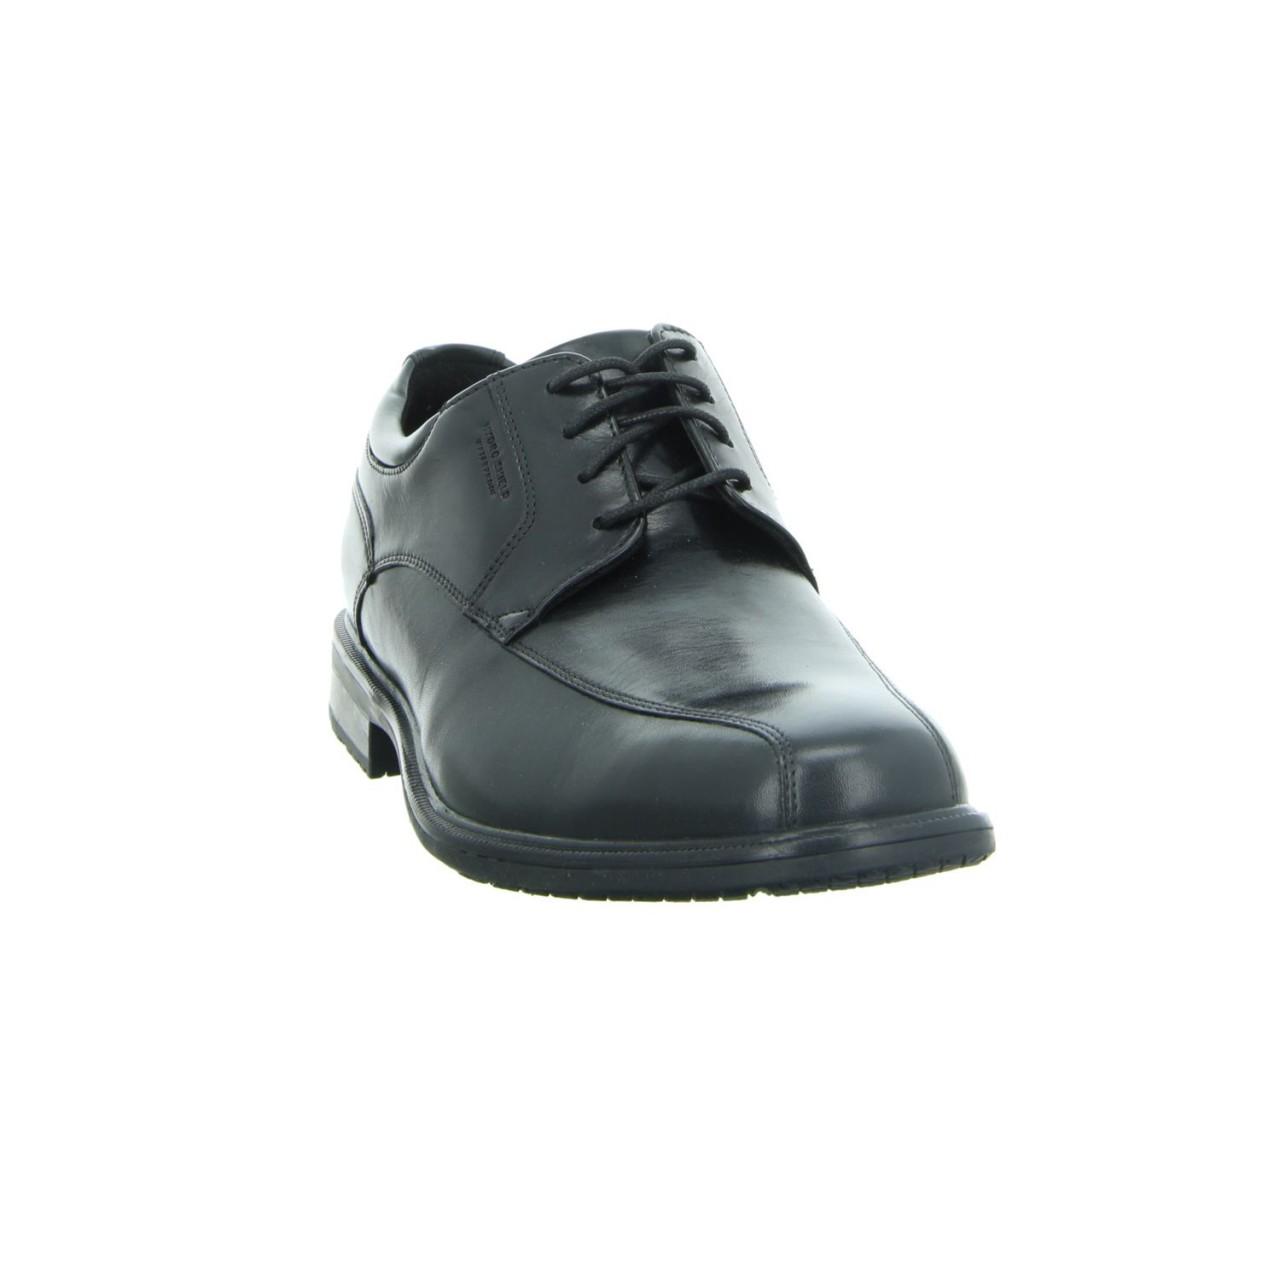 puma black formal shoes